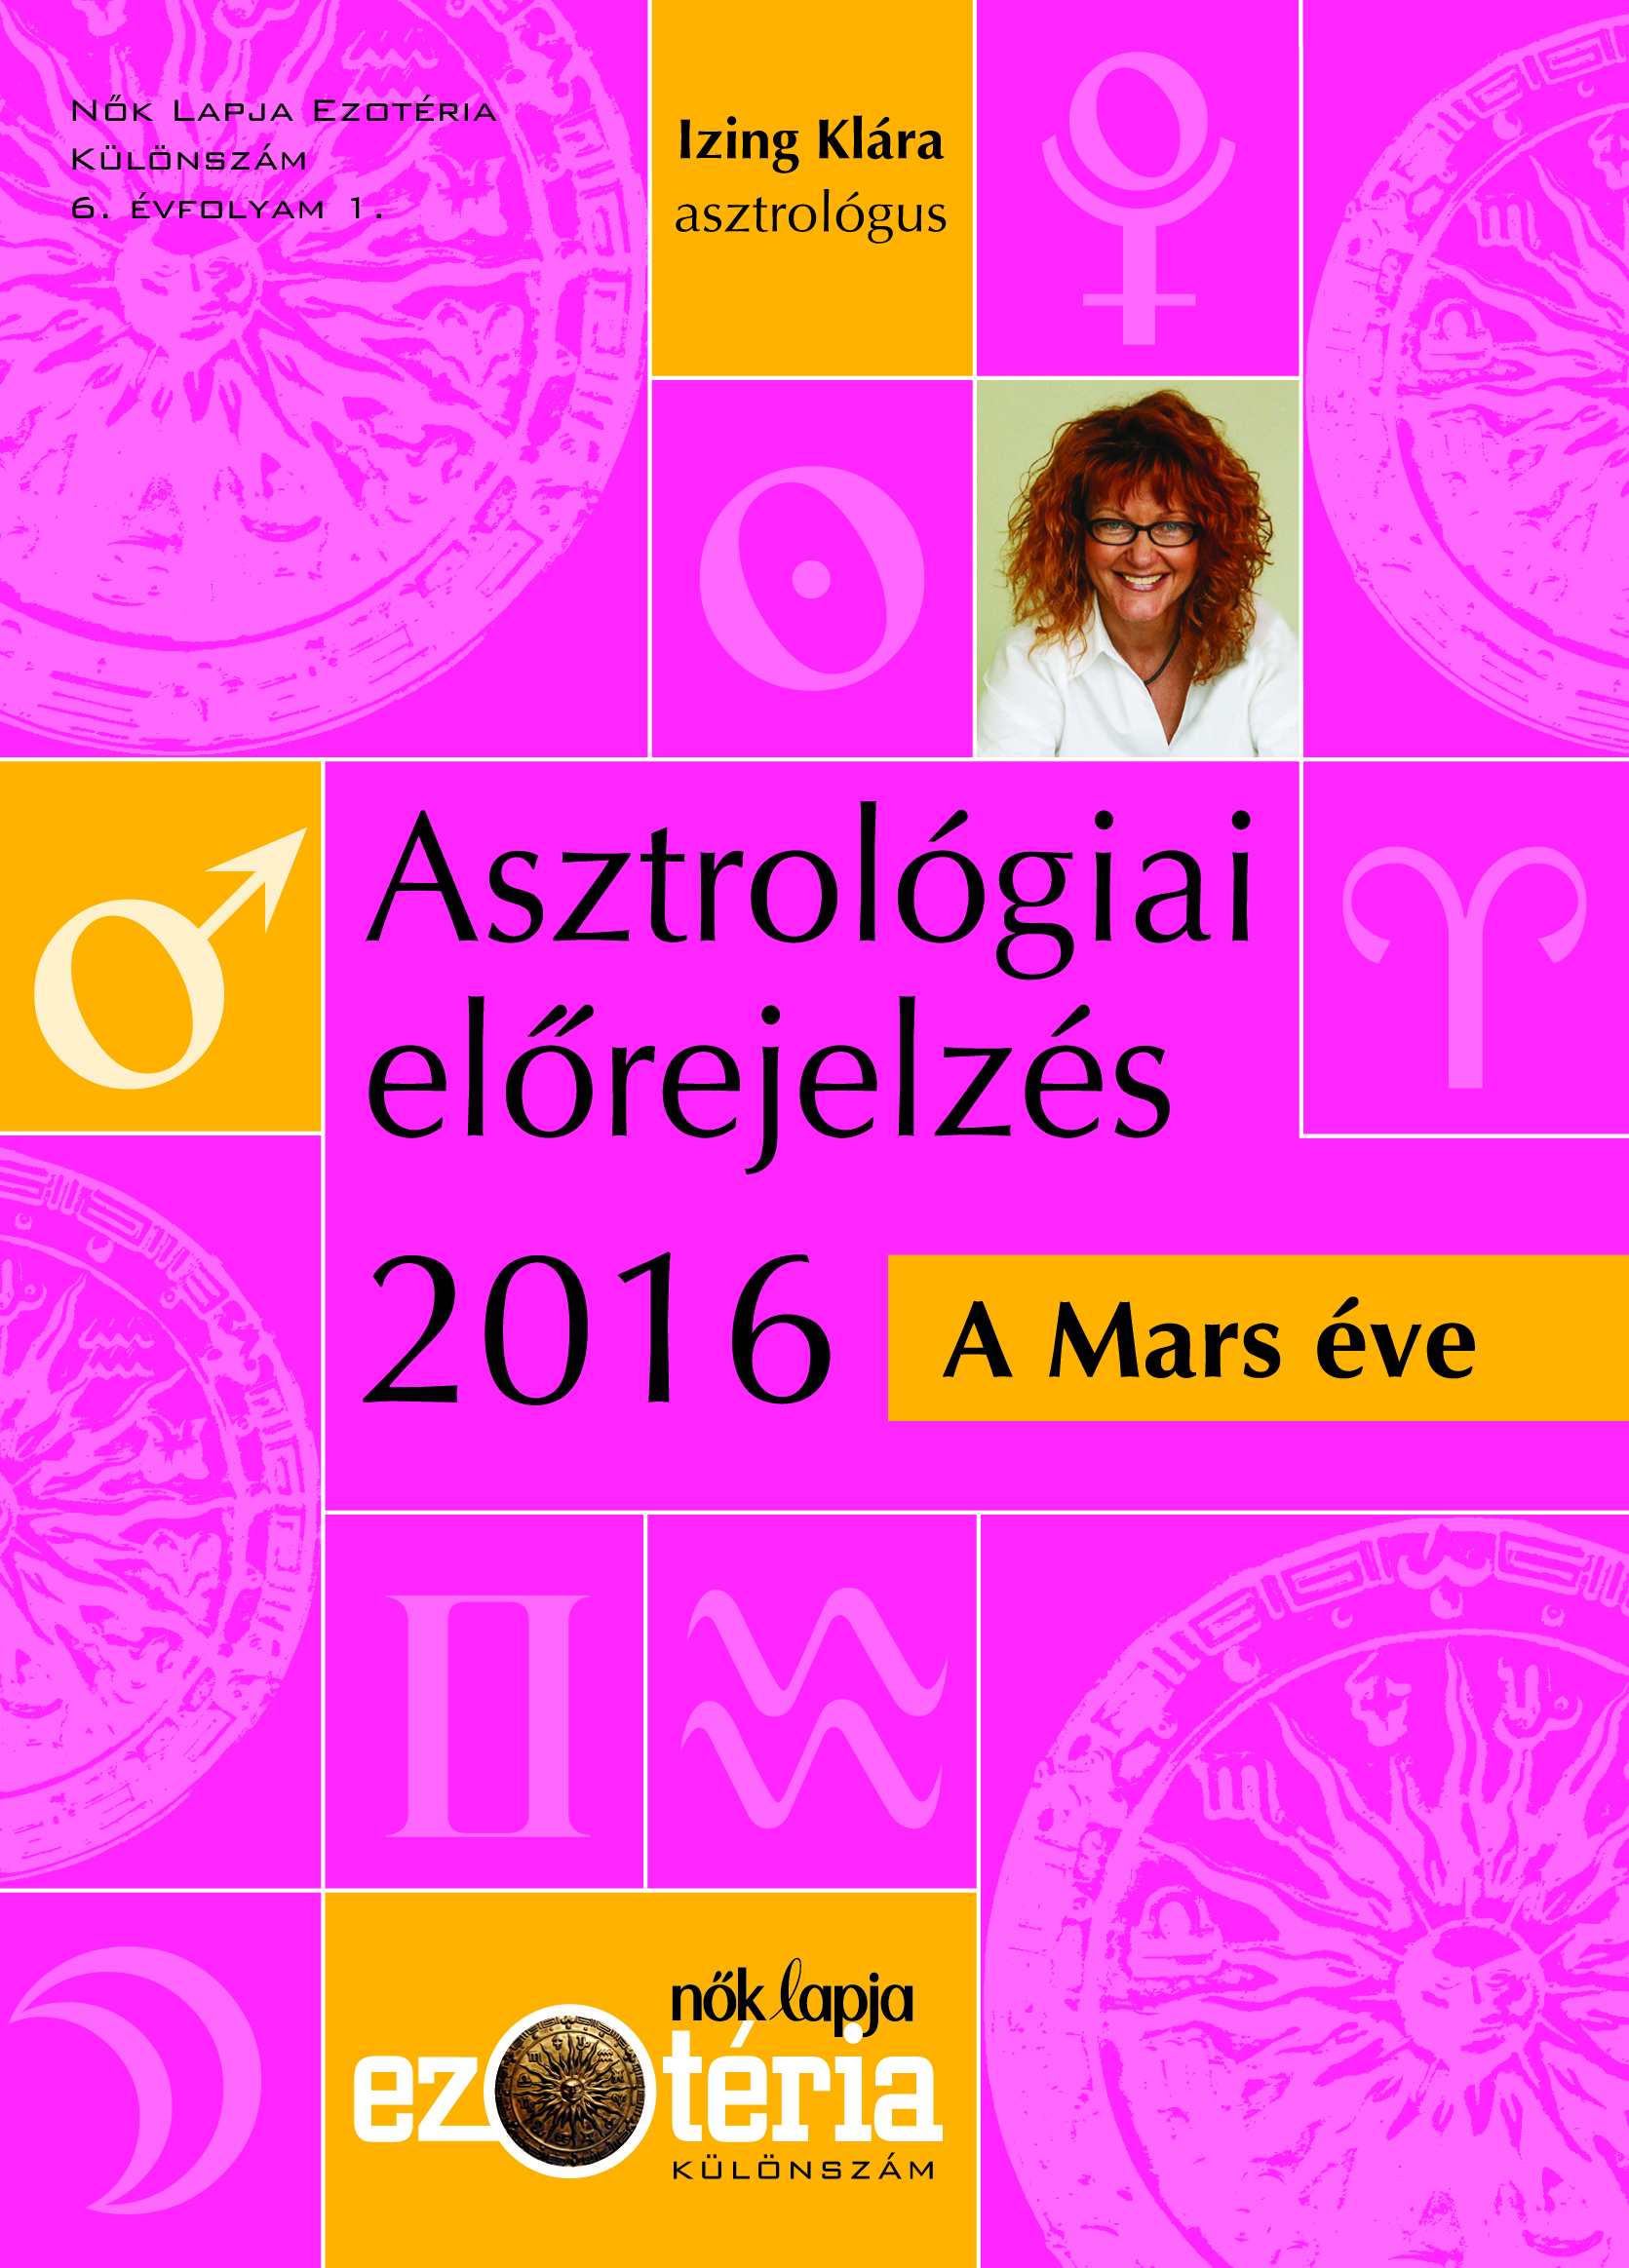 A Mars éve: ezt hozza a 2016-os év